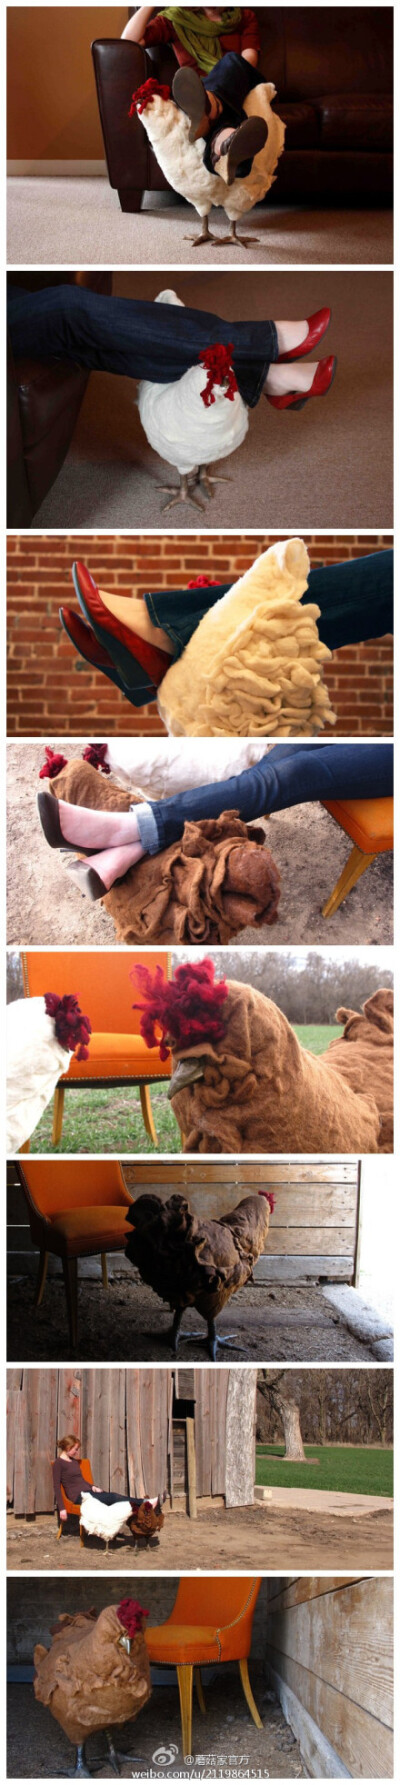 #创意家居#【温顺的大母鸡脚凳】这些外形很逼真的大母鸡脚凳，看起来还蛮舒适的样子。